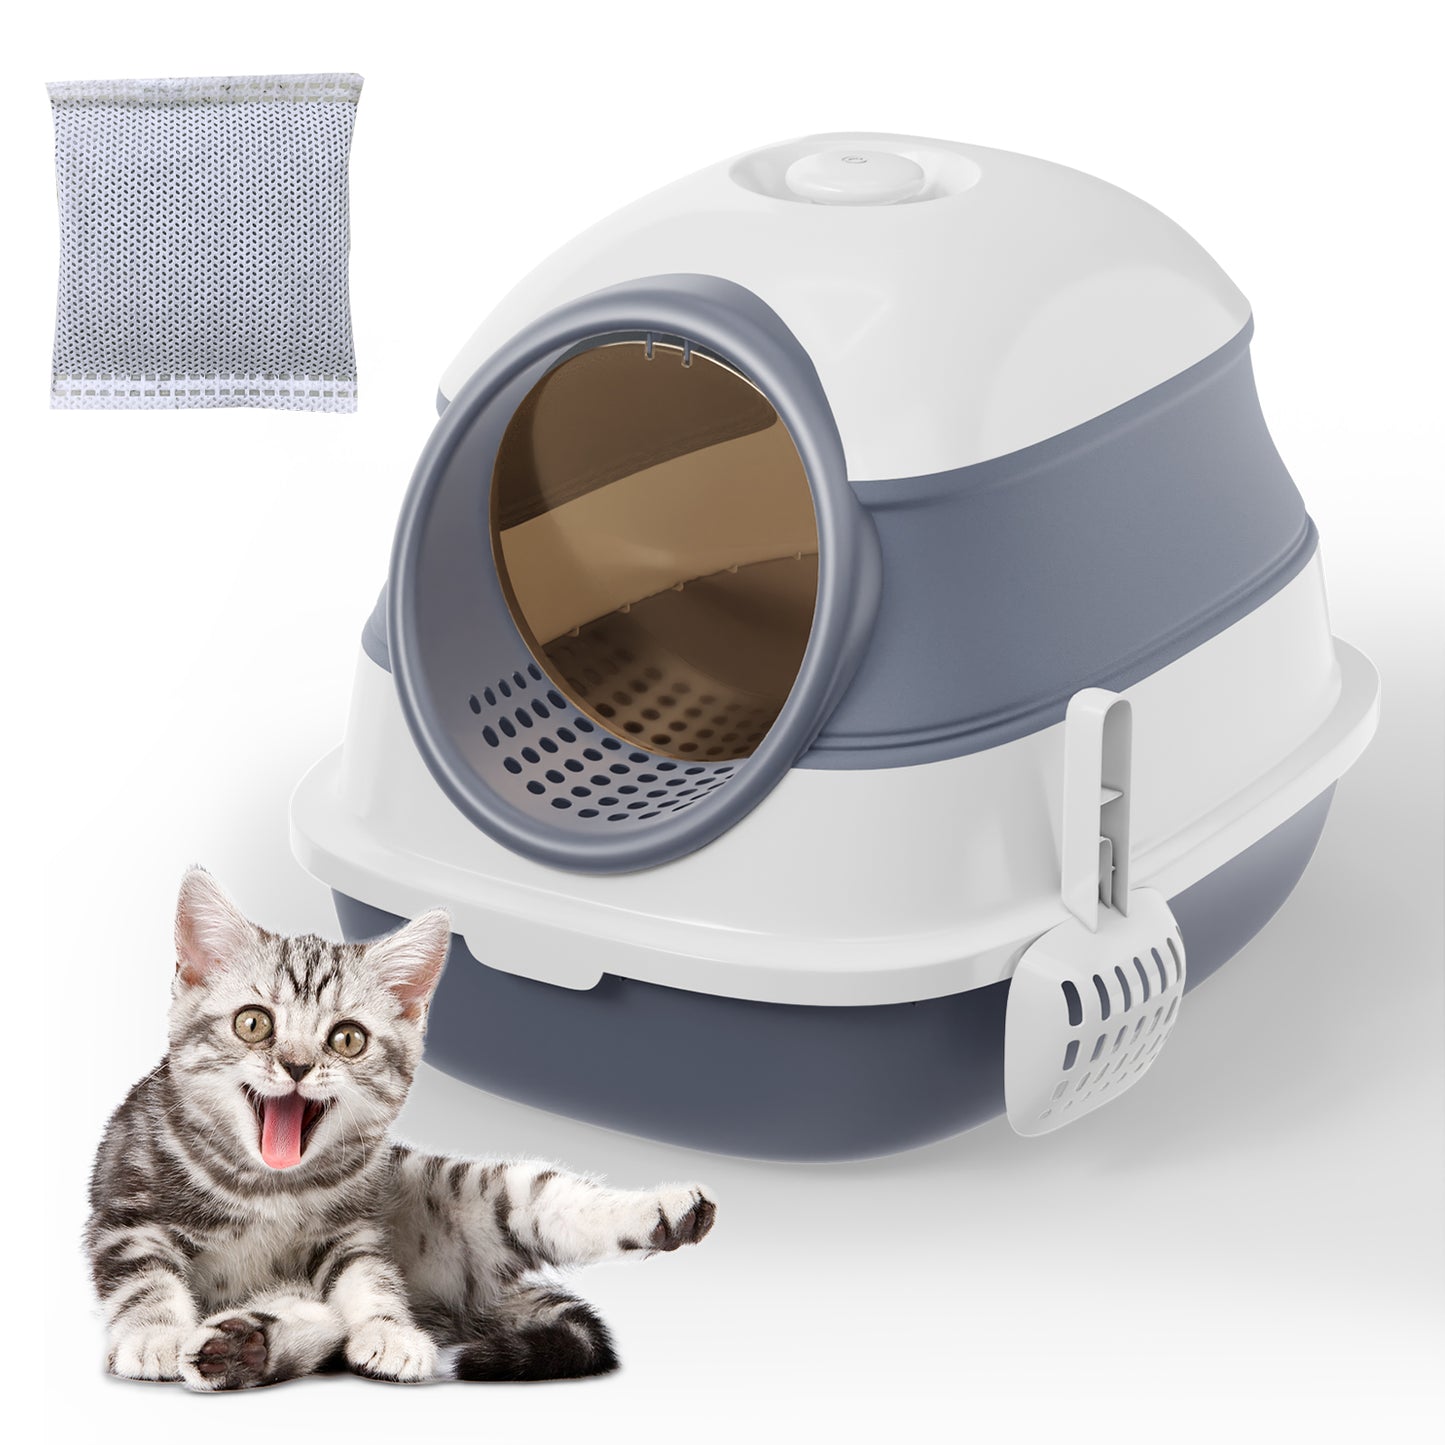 Foldable Cat Litter Box, Cat Toilet - TOPMART